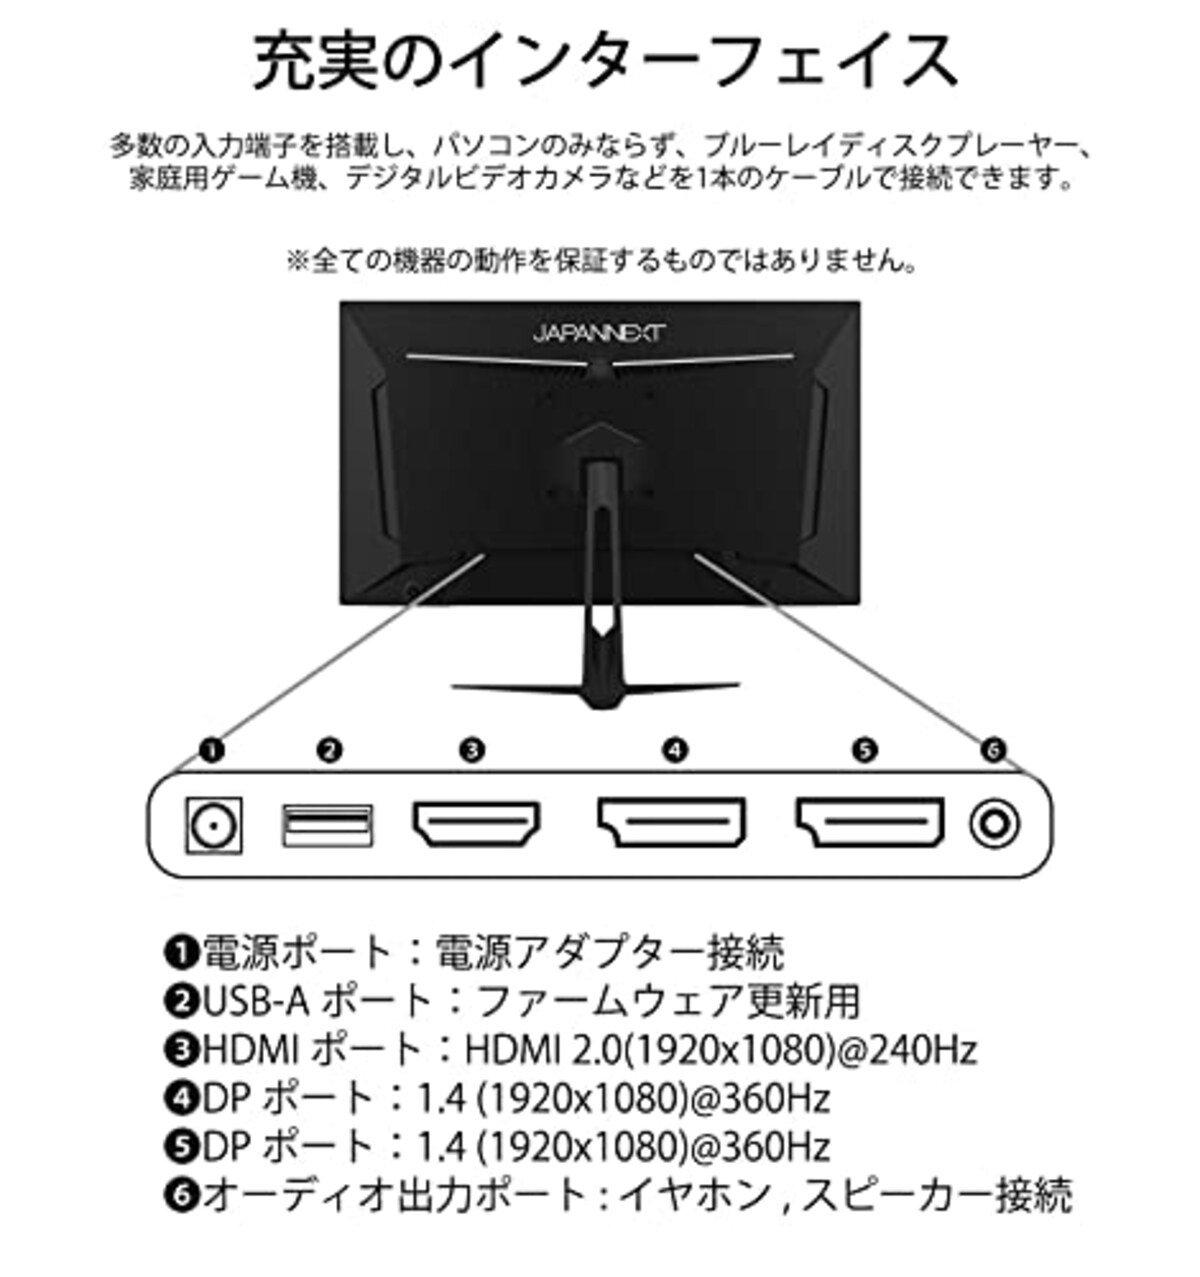  【Amazon.co.jp限定】JAPANNEXT 24.5型IPS フルHDパネル搭載360Hz対応ゲーミングモニター A-360 HDMI DP画像5 